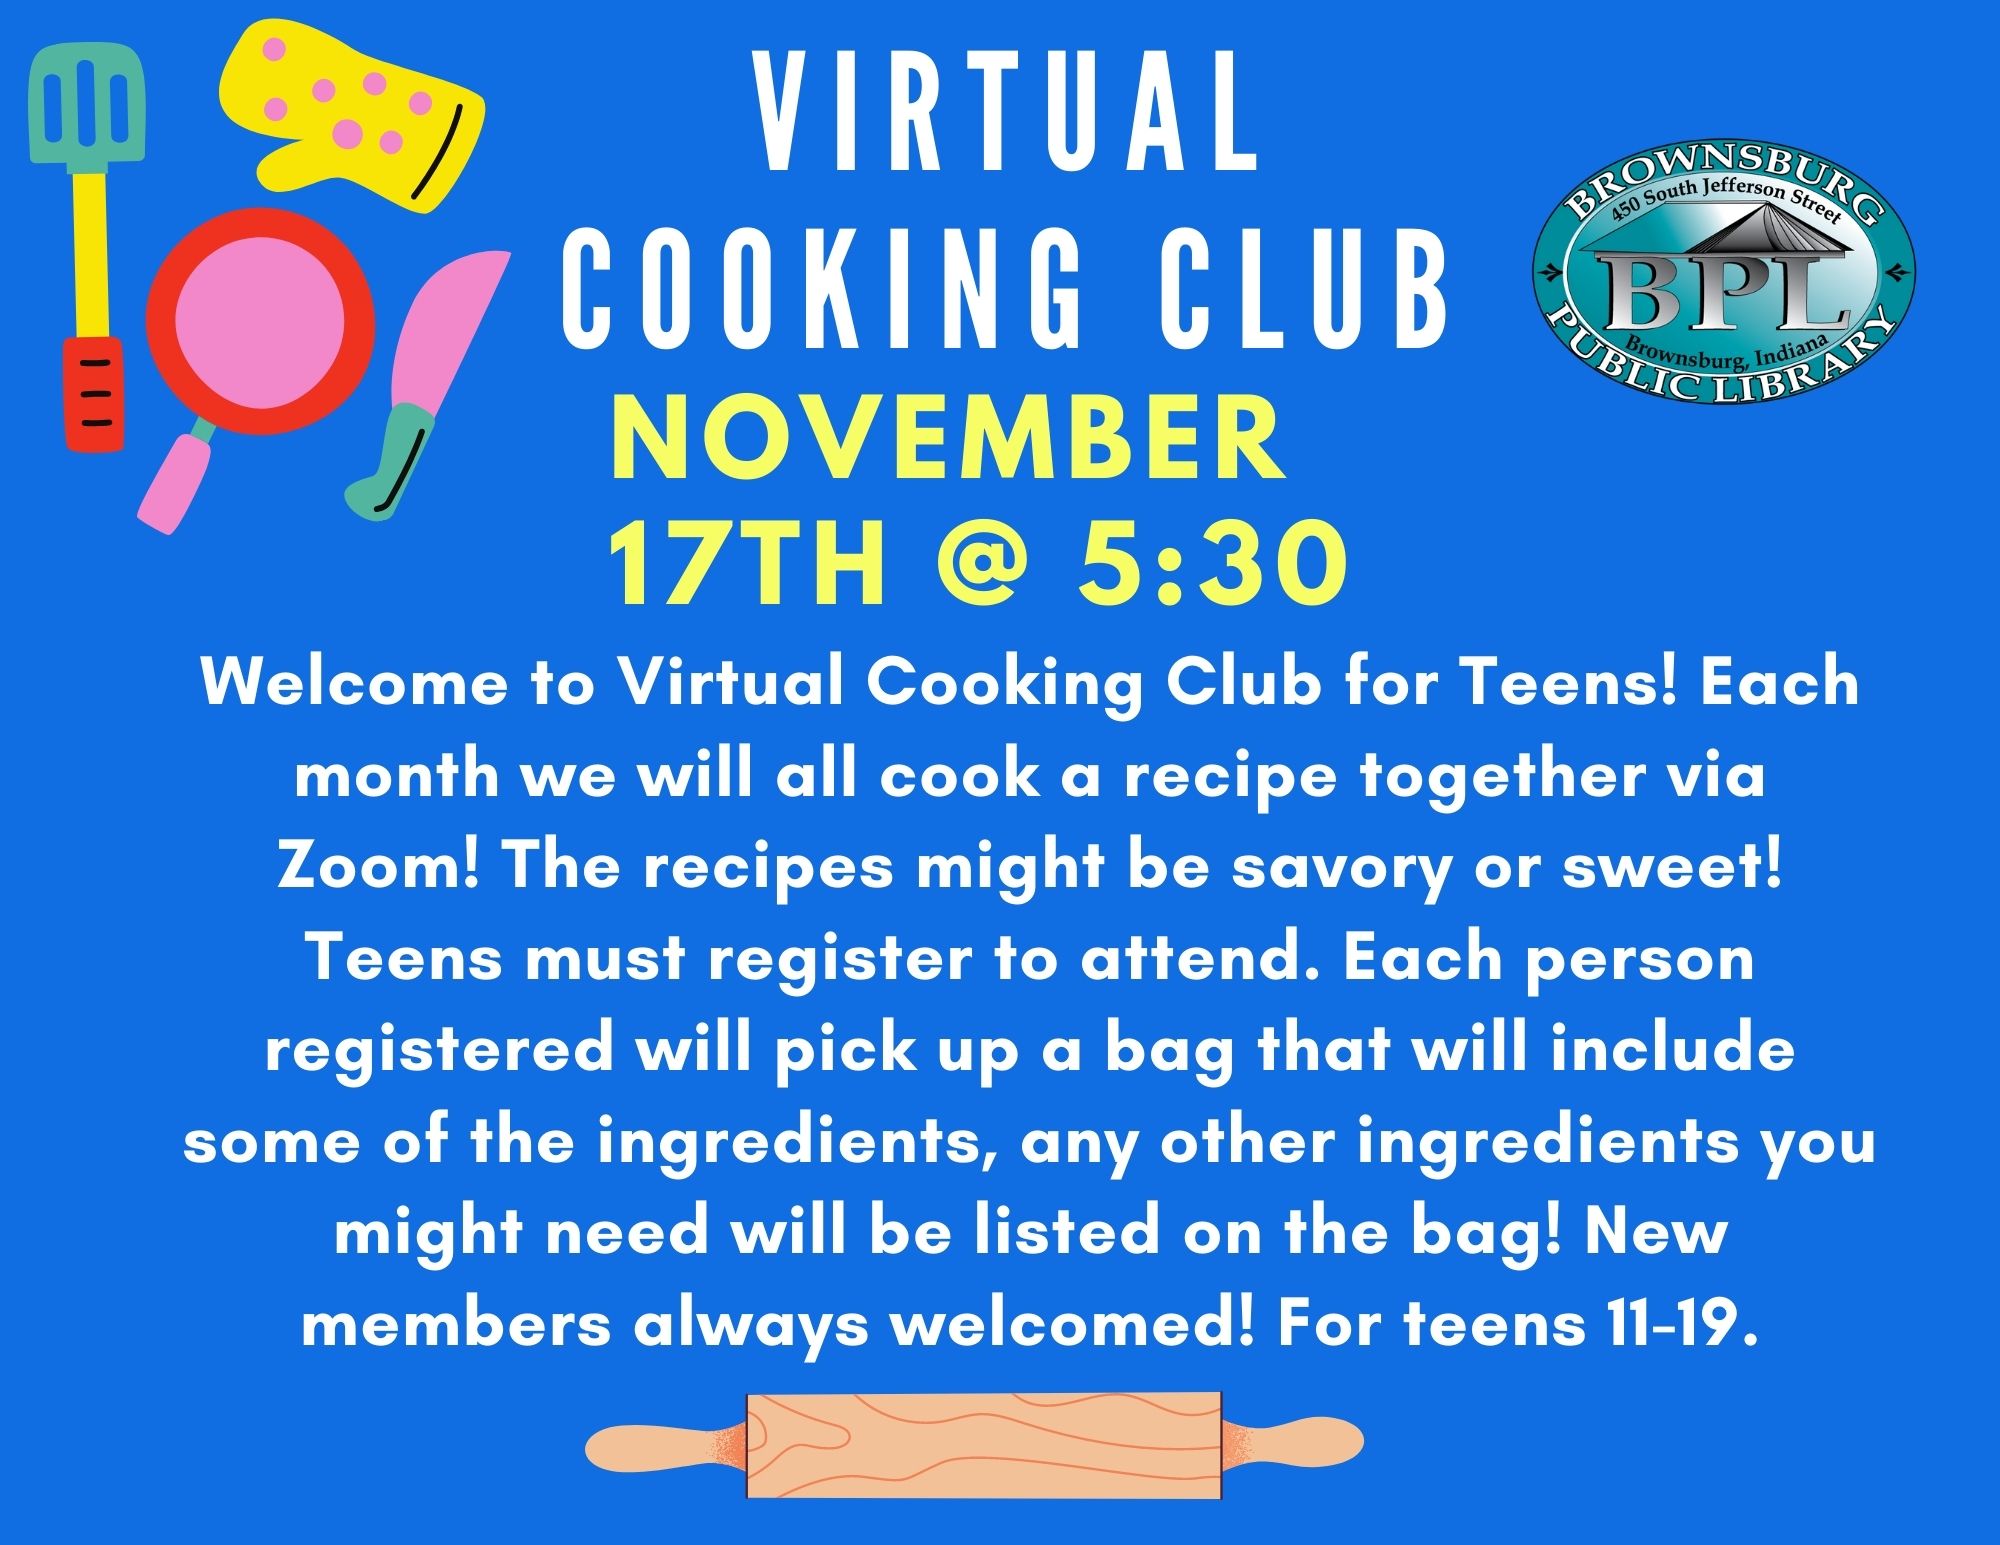 Virtual Cooking Club November 17th at 5:30